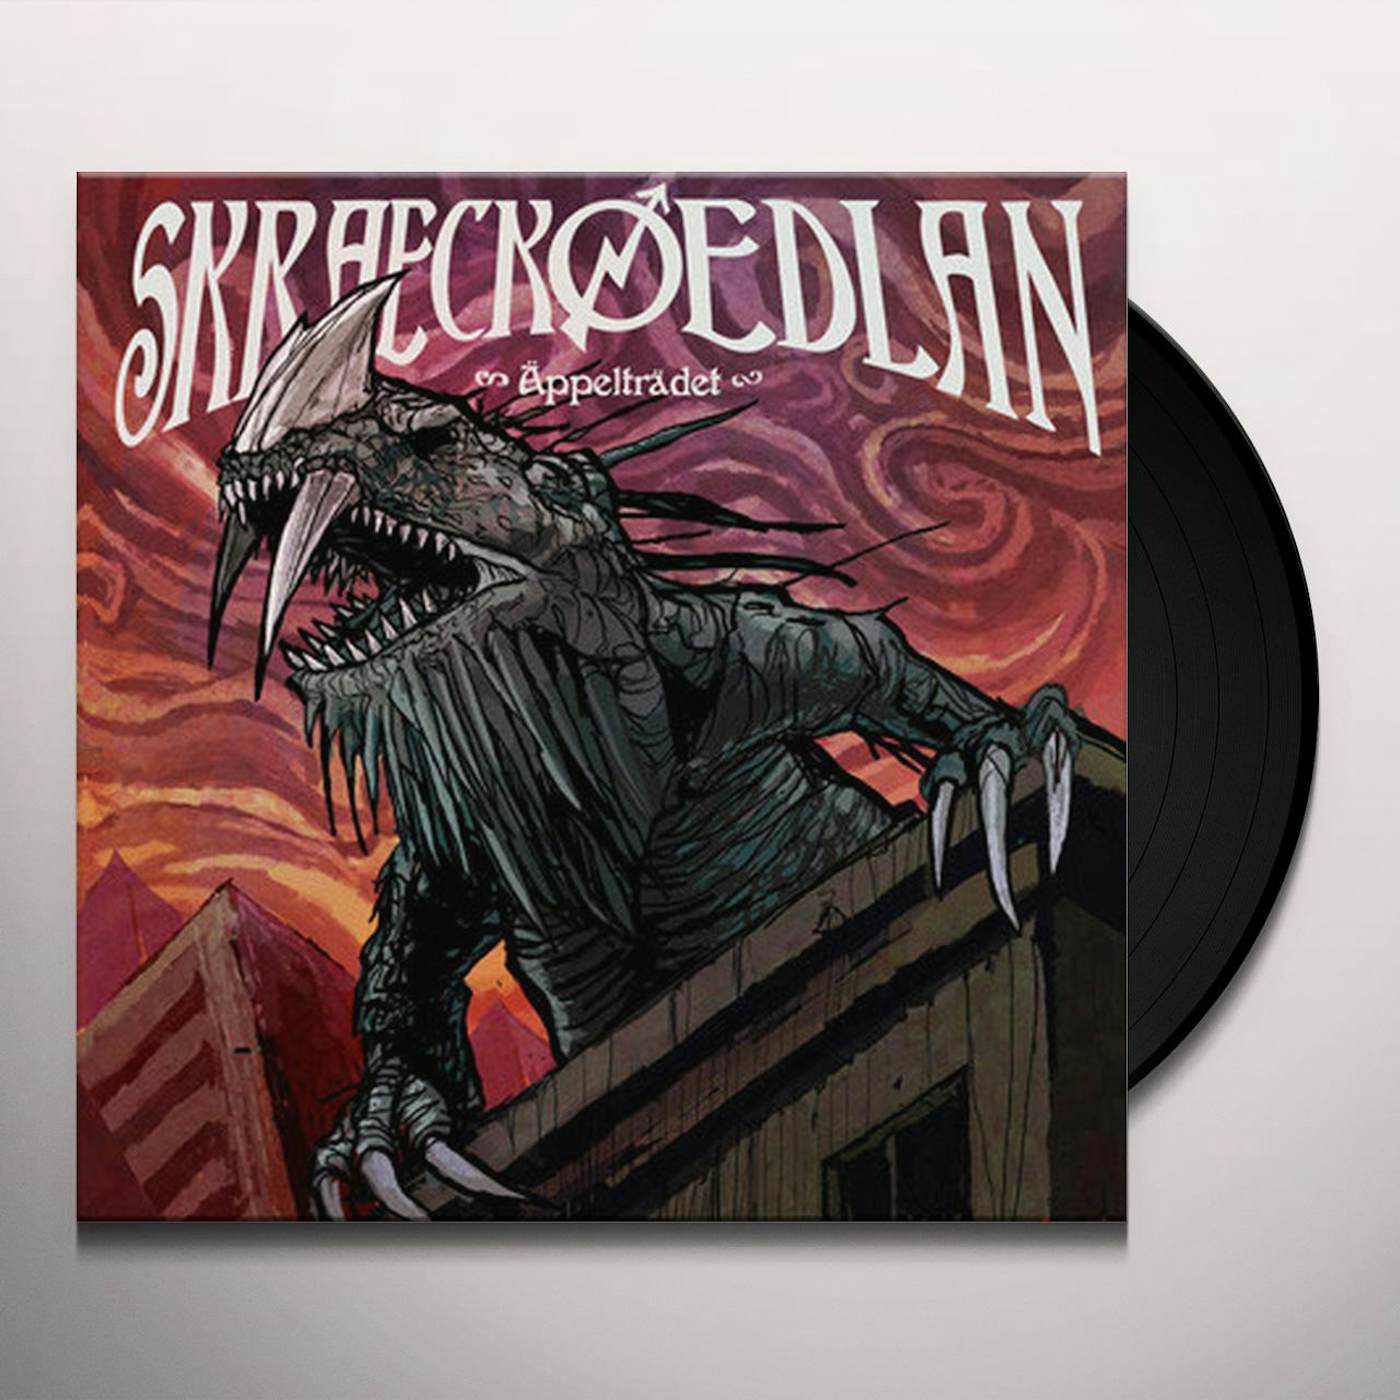 Skraeckoedlan Appeltradet Vinyl Record